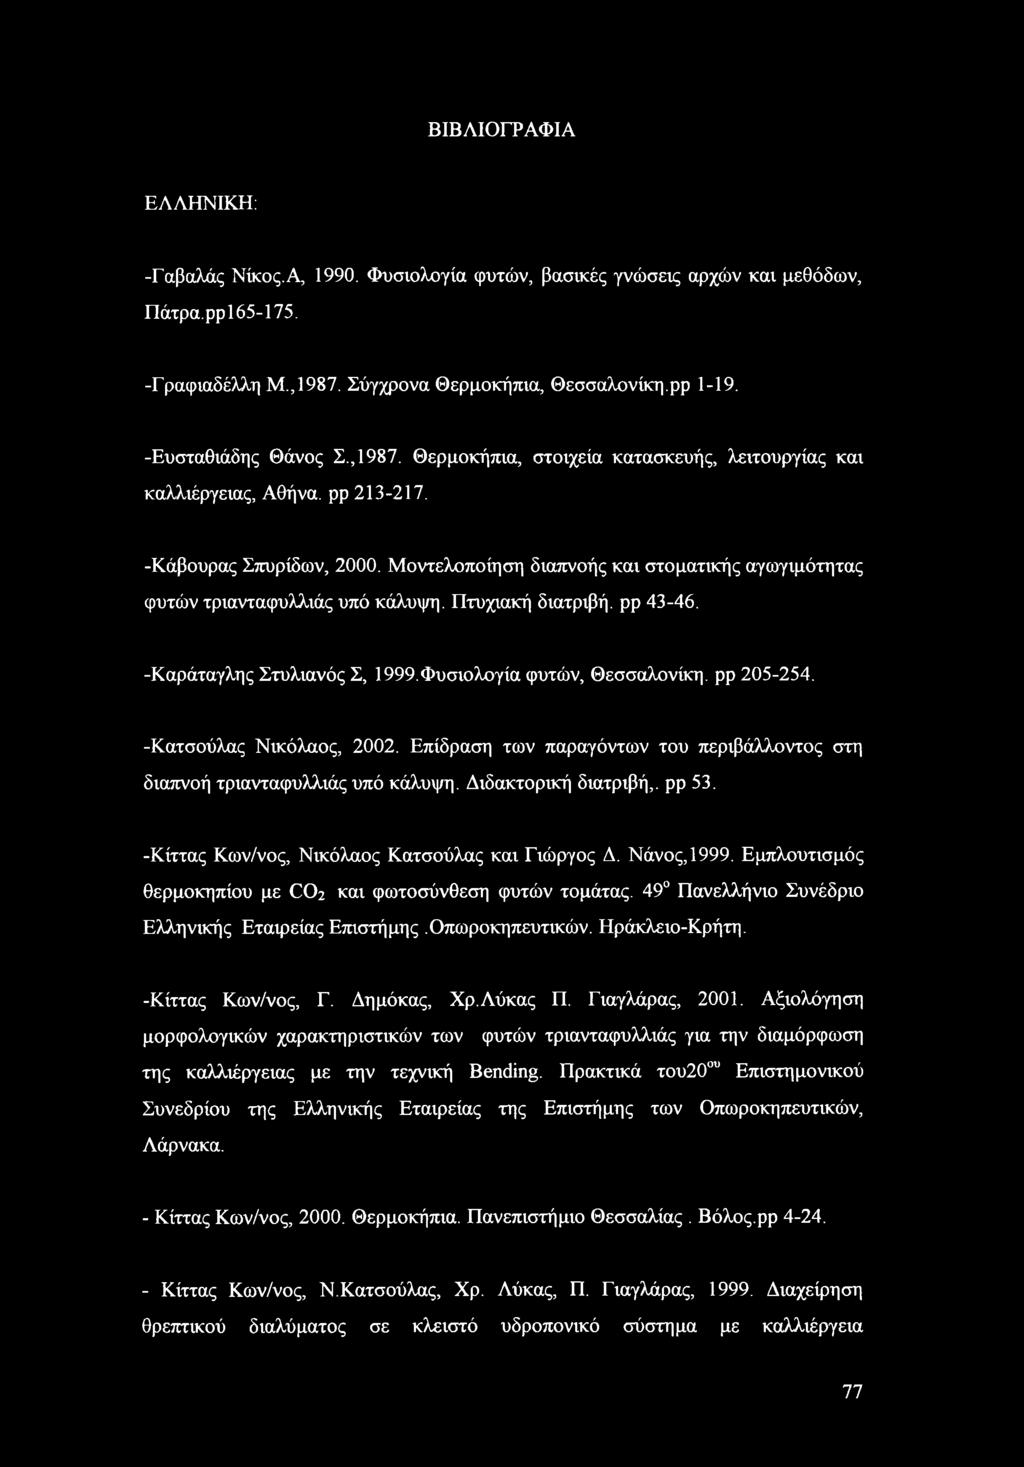 Μοντελοποίηση διαπνοής και στοματικής αγωγιμότητας φυτών τριανταφυλλιάς υπό κάλυψη. Πτυχιακή διατριβή, ρρ 43-46. -Καράταγλης Στυλιανός Σ, 1999.Φυσιολογία φυτών, Θεσσαλονίκη, ρρ 205-254.